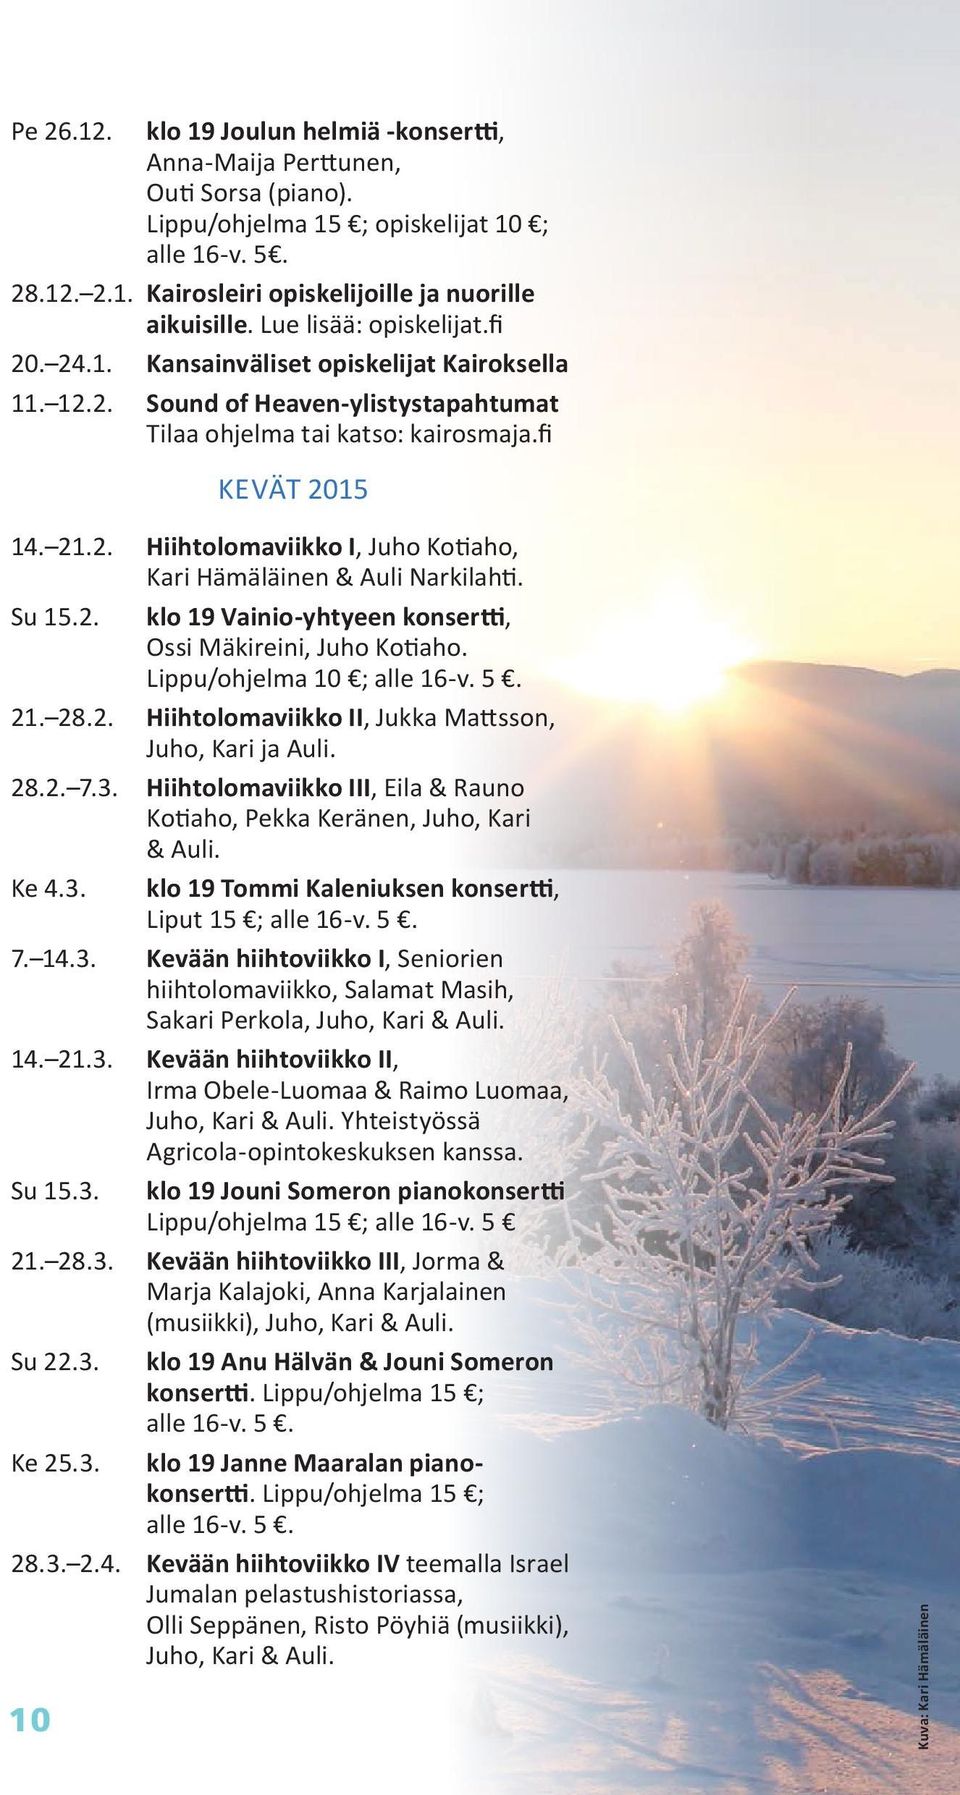 Su 15.2. klo 19 Vainio-yhtyeen konsertti, Ossi Mäkireini, Juho Kotiaho. Lippu/ohjelma 10 ; alle 16-v. 5. 21. 28.2. Hiihtolomaviikko II, Jukka Mattsson, Juho, Kari ja Auli. 28.2. 7.3.